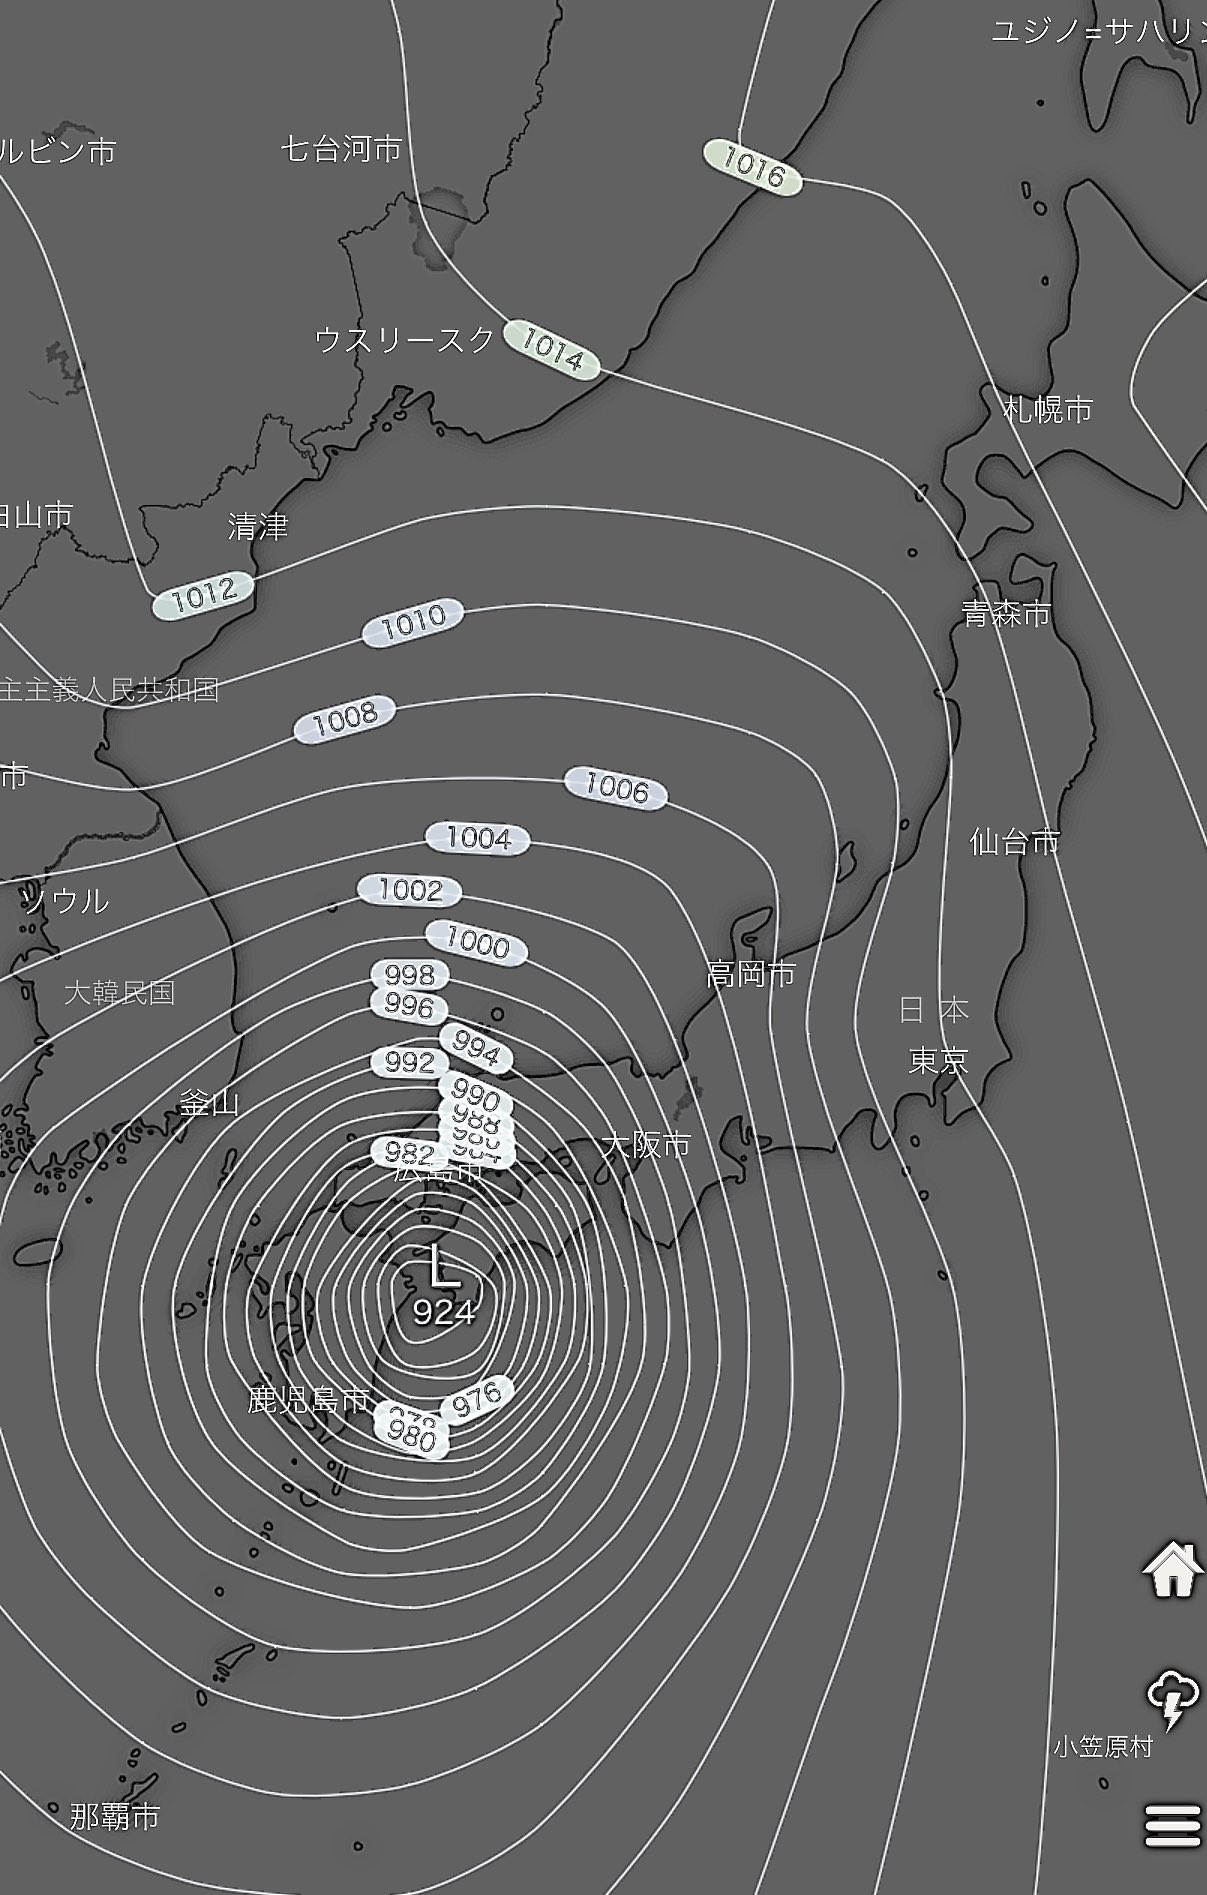 ぬま群馬 台風10号 9月6日18時 ヨーロッパ中期予報センター 長期予報が一番当たる予報機関です 四国付近で924hpa 日本の気象庁の分類で 超大型で猛烈な台風 に相当 観測史上最悪になる可能性もあります 別の予報機関では関西直撃です 明日か